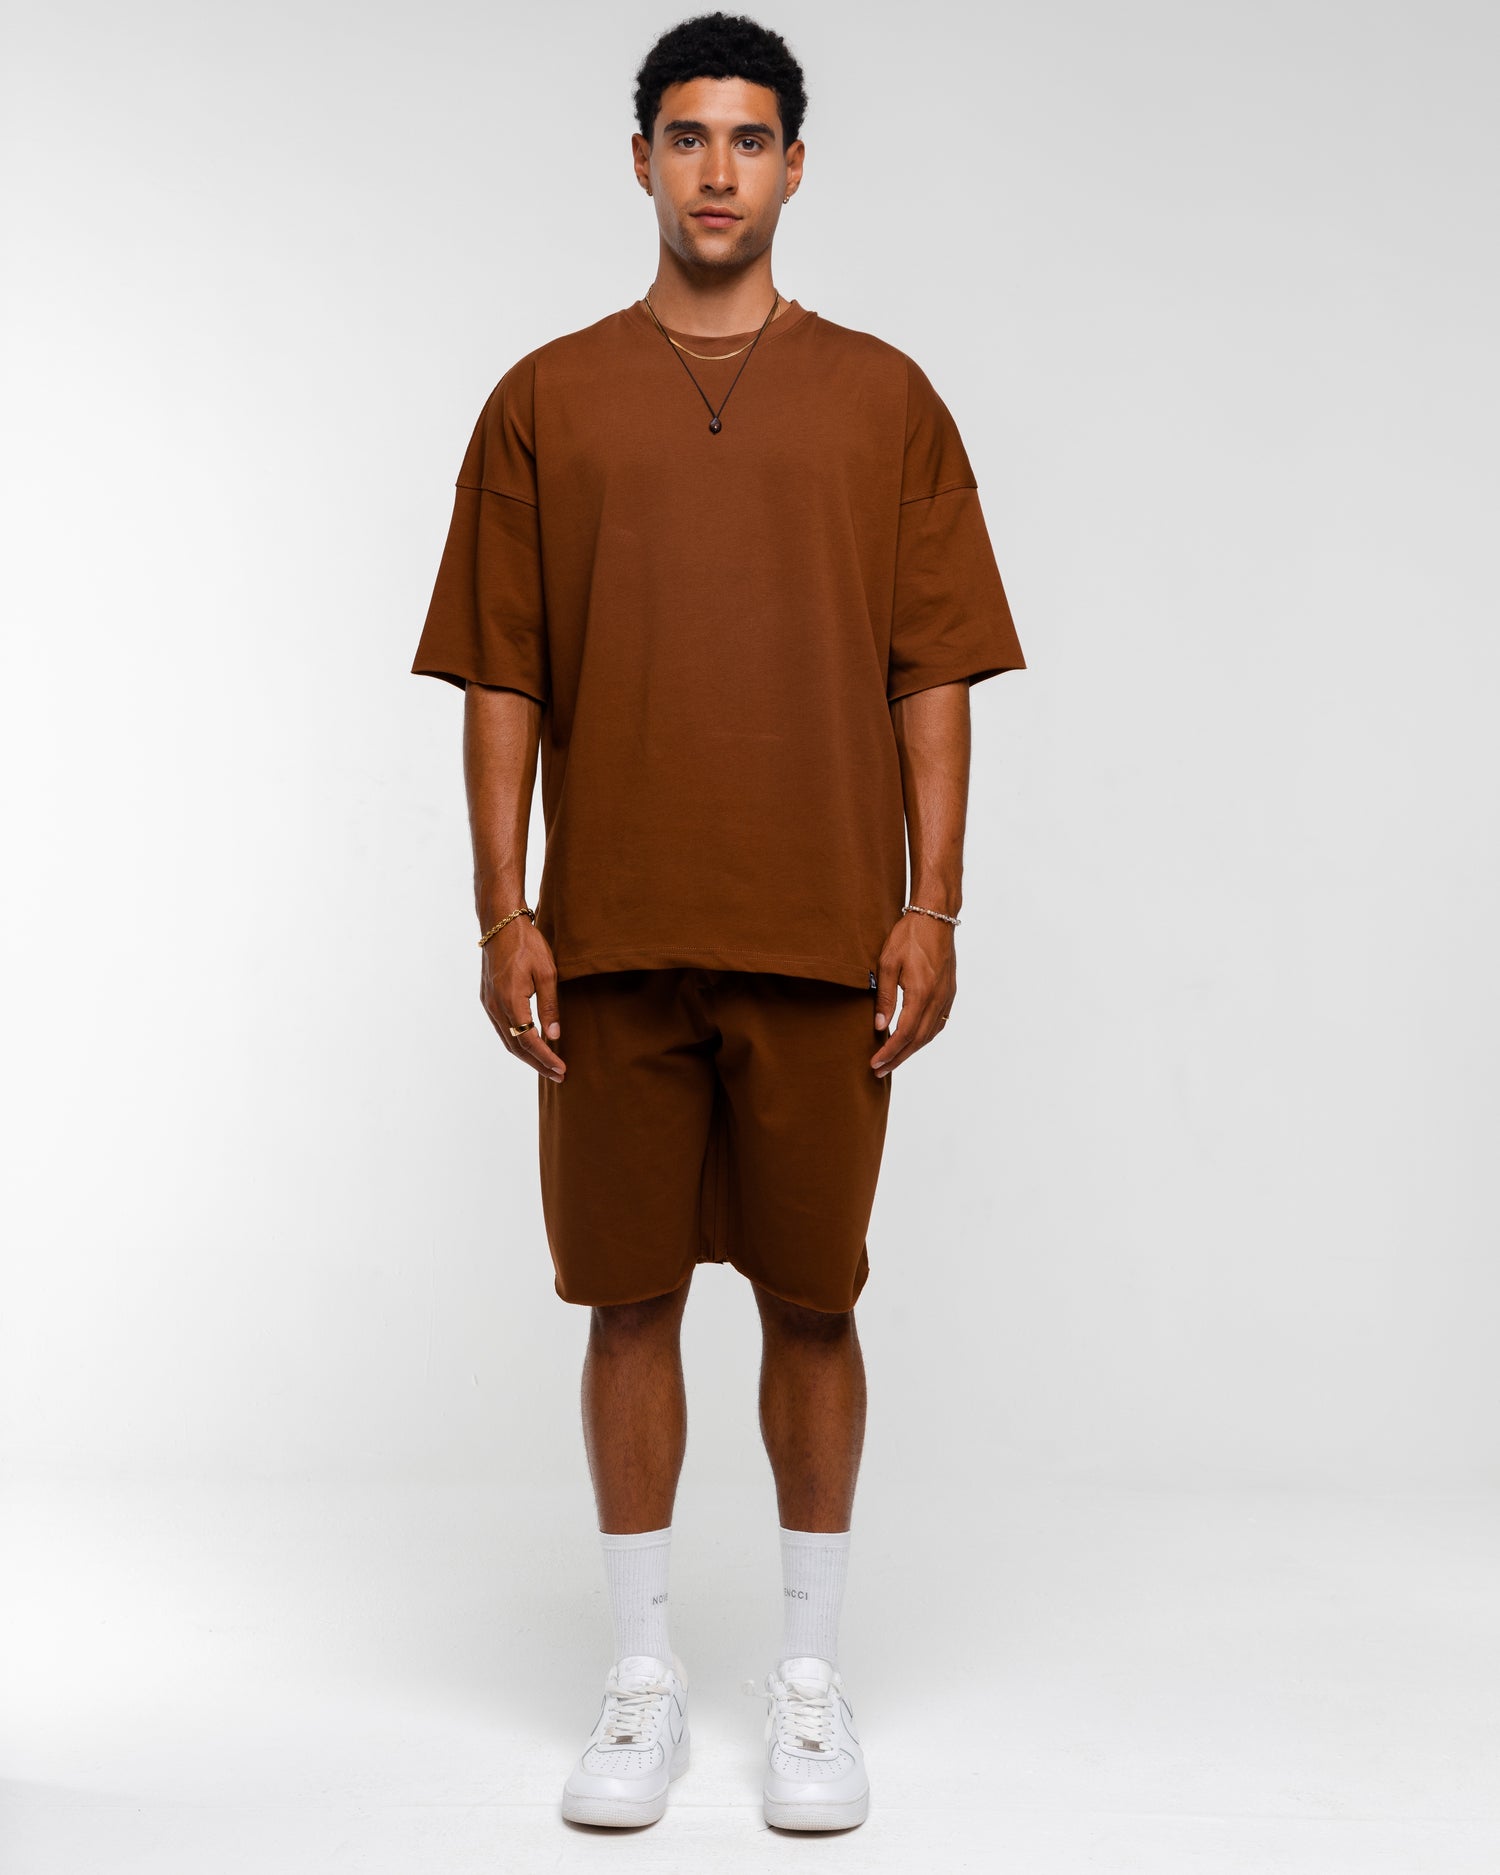 T-shirt&short brown set